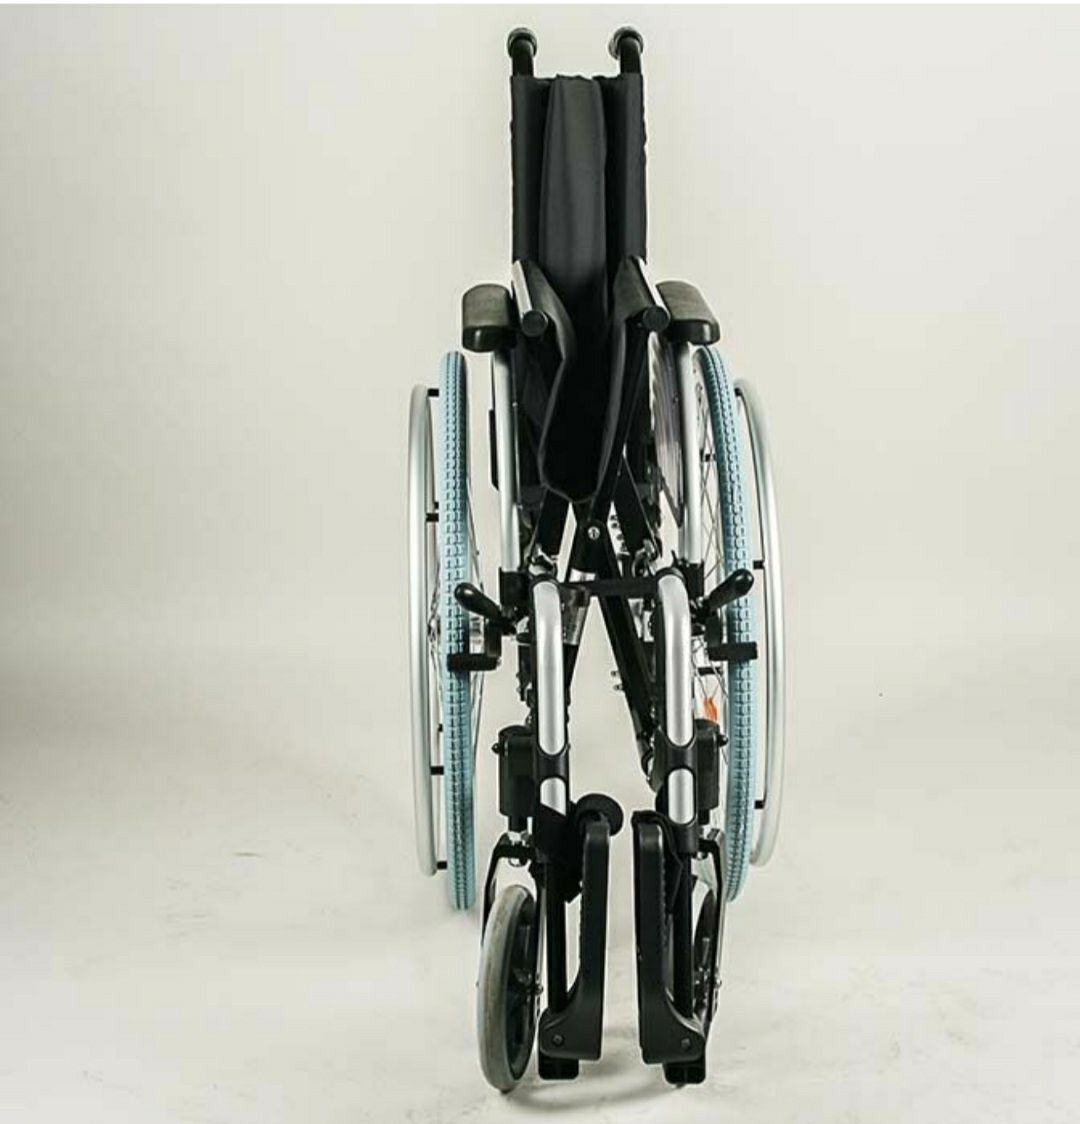 Кресло-коляска инвалидная ОТТО БОКК Старт